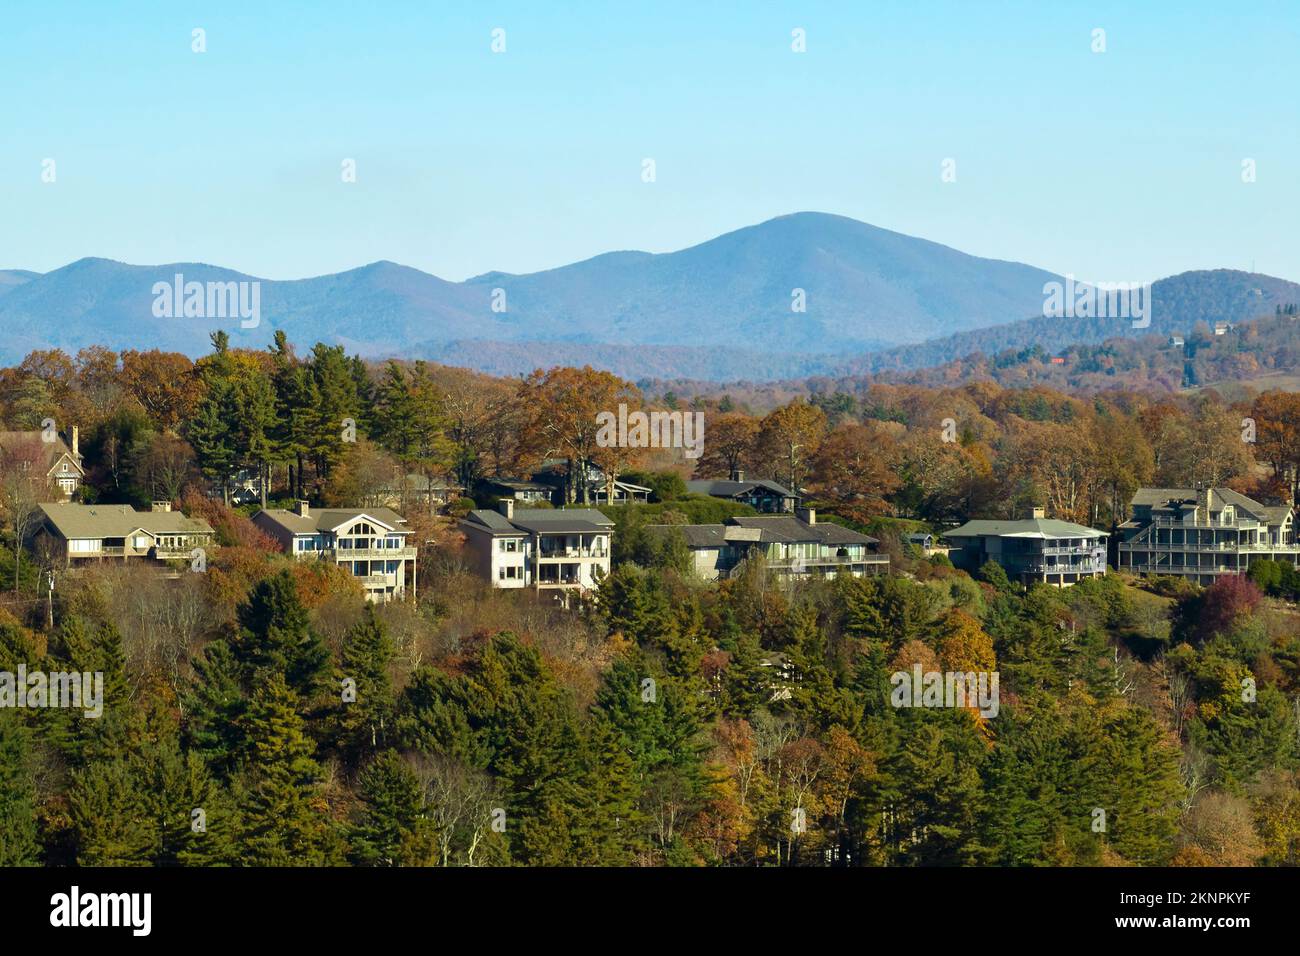 Blick aus der Vogelperspektive auf die großen Familienhäuser auf dem Gipfel zwischen gelben Bäumen in der Vorstadt von North Carolina im Herbst. Immobilienentwicklung in Stockfoto